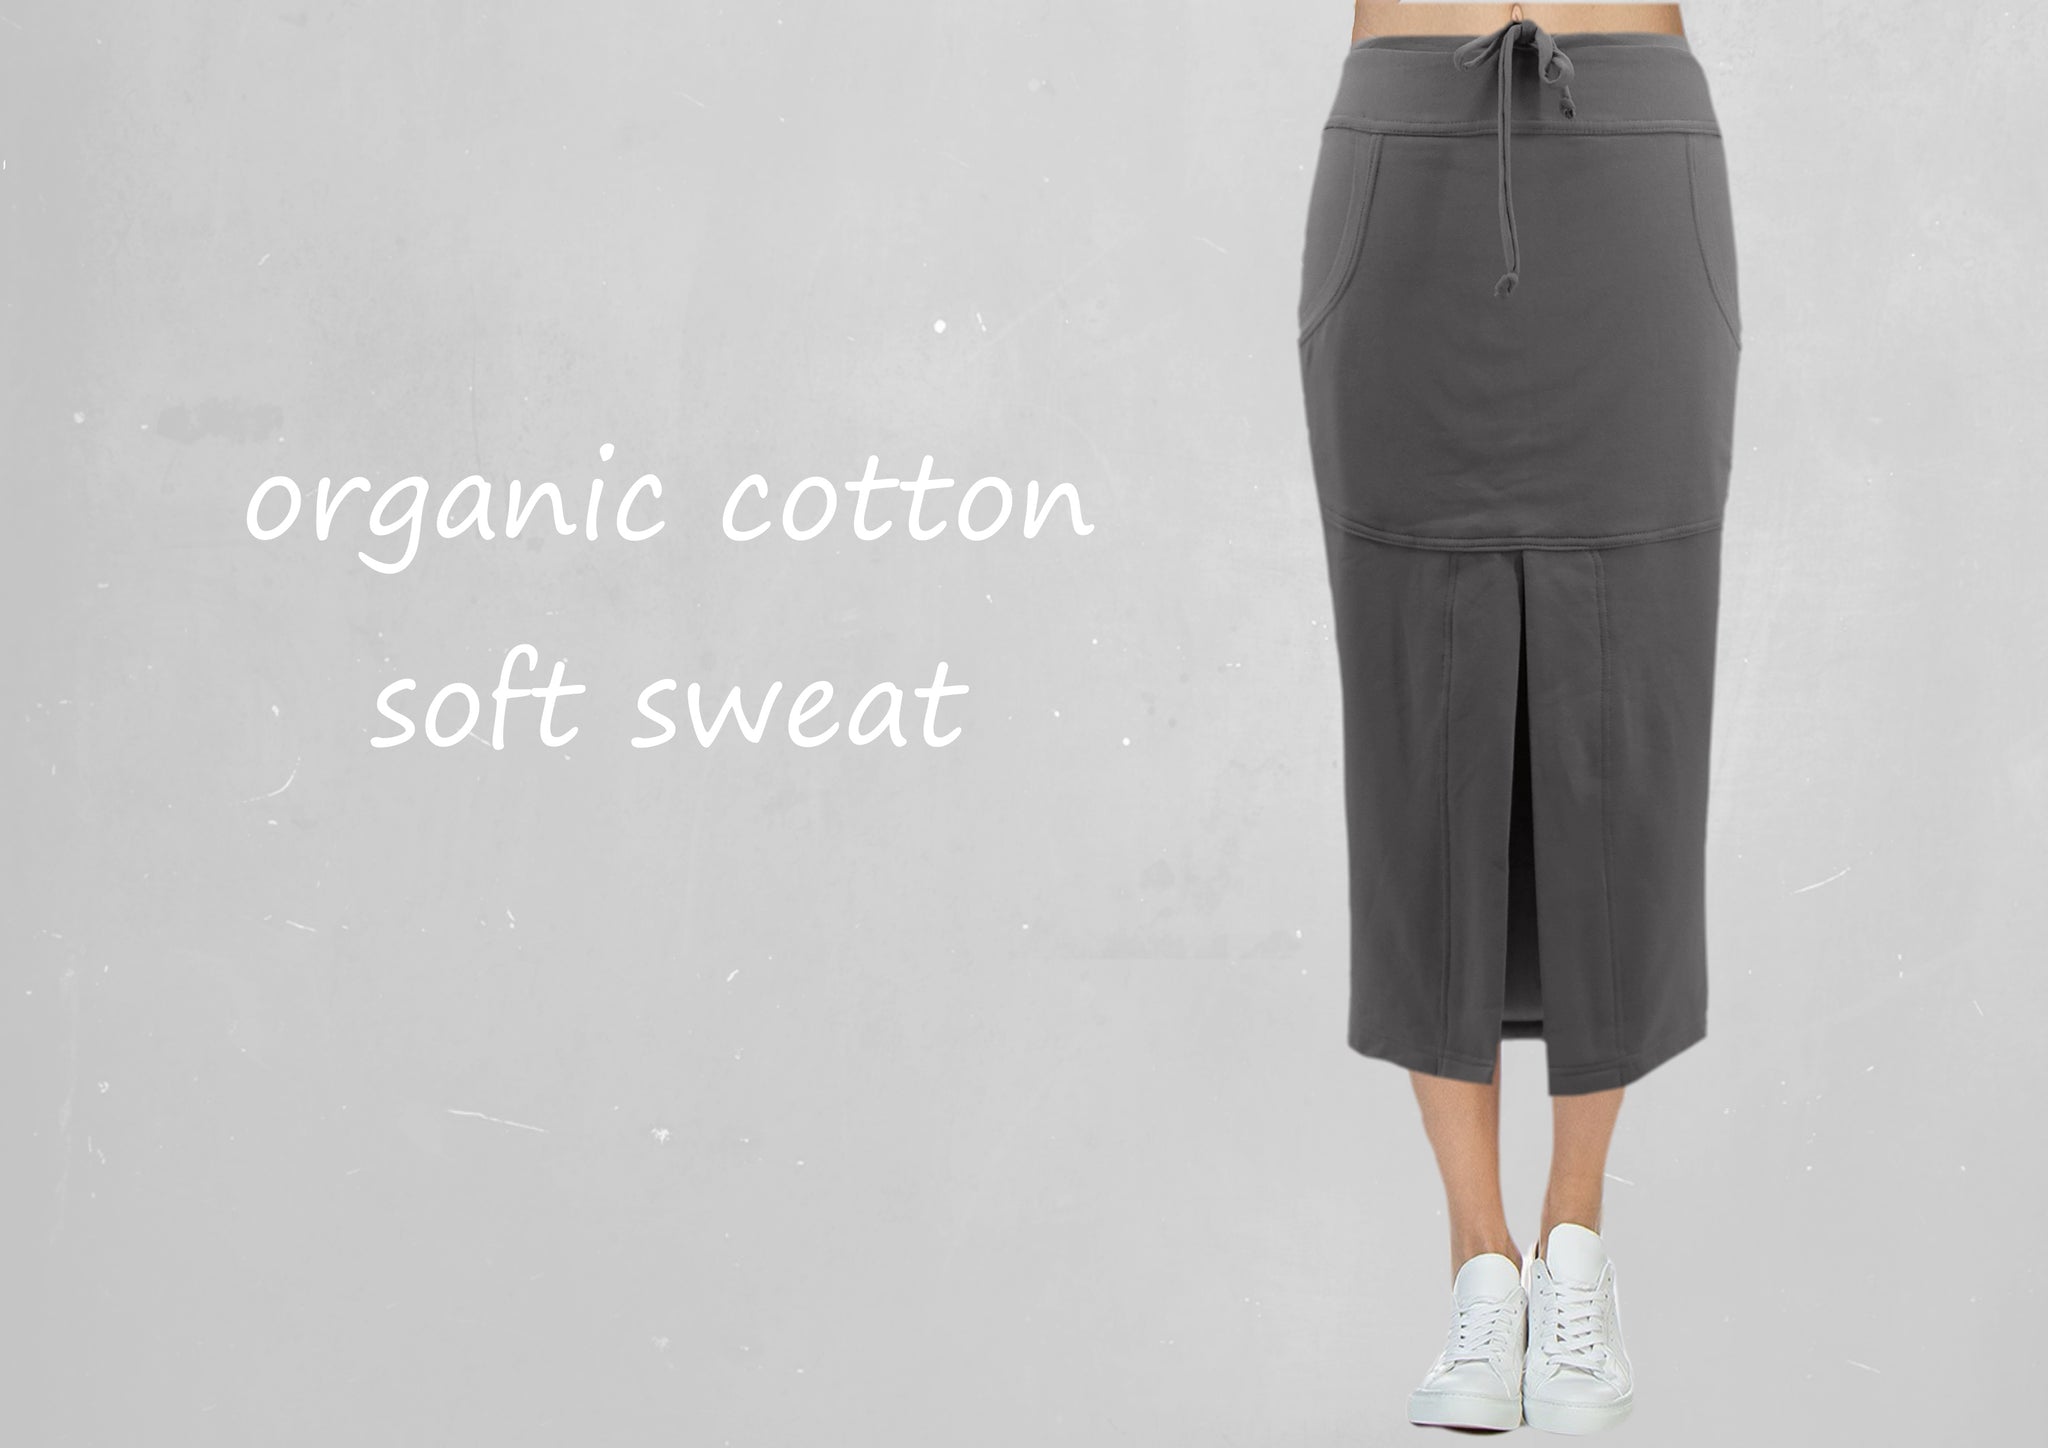 Midi rok van soft sweat bio katoen / Midi skirt made of soft sweat organic cotton